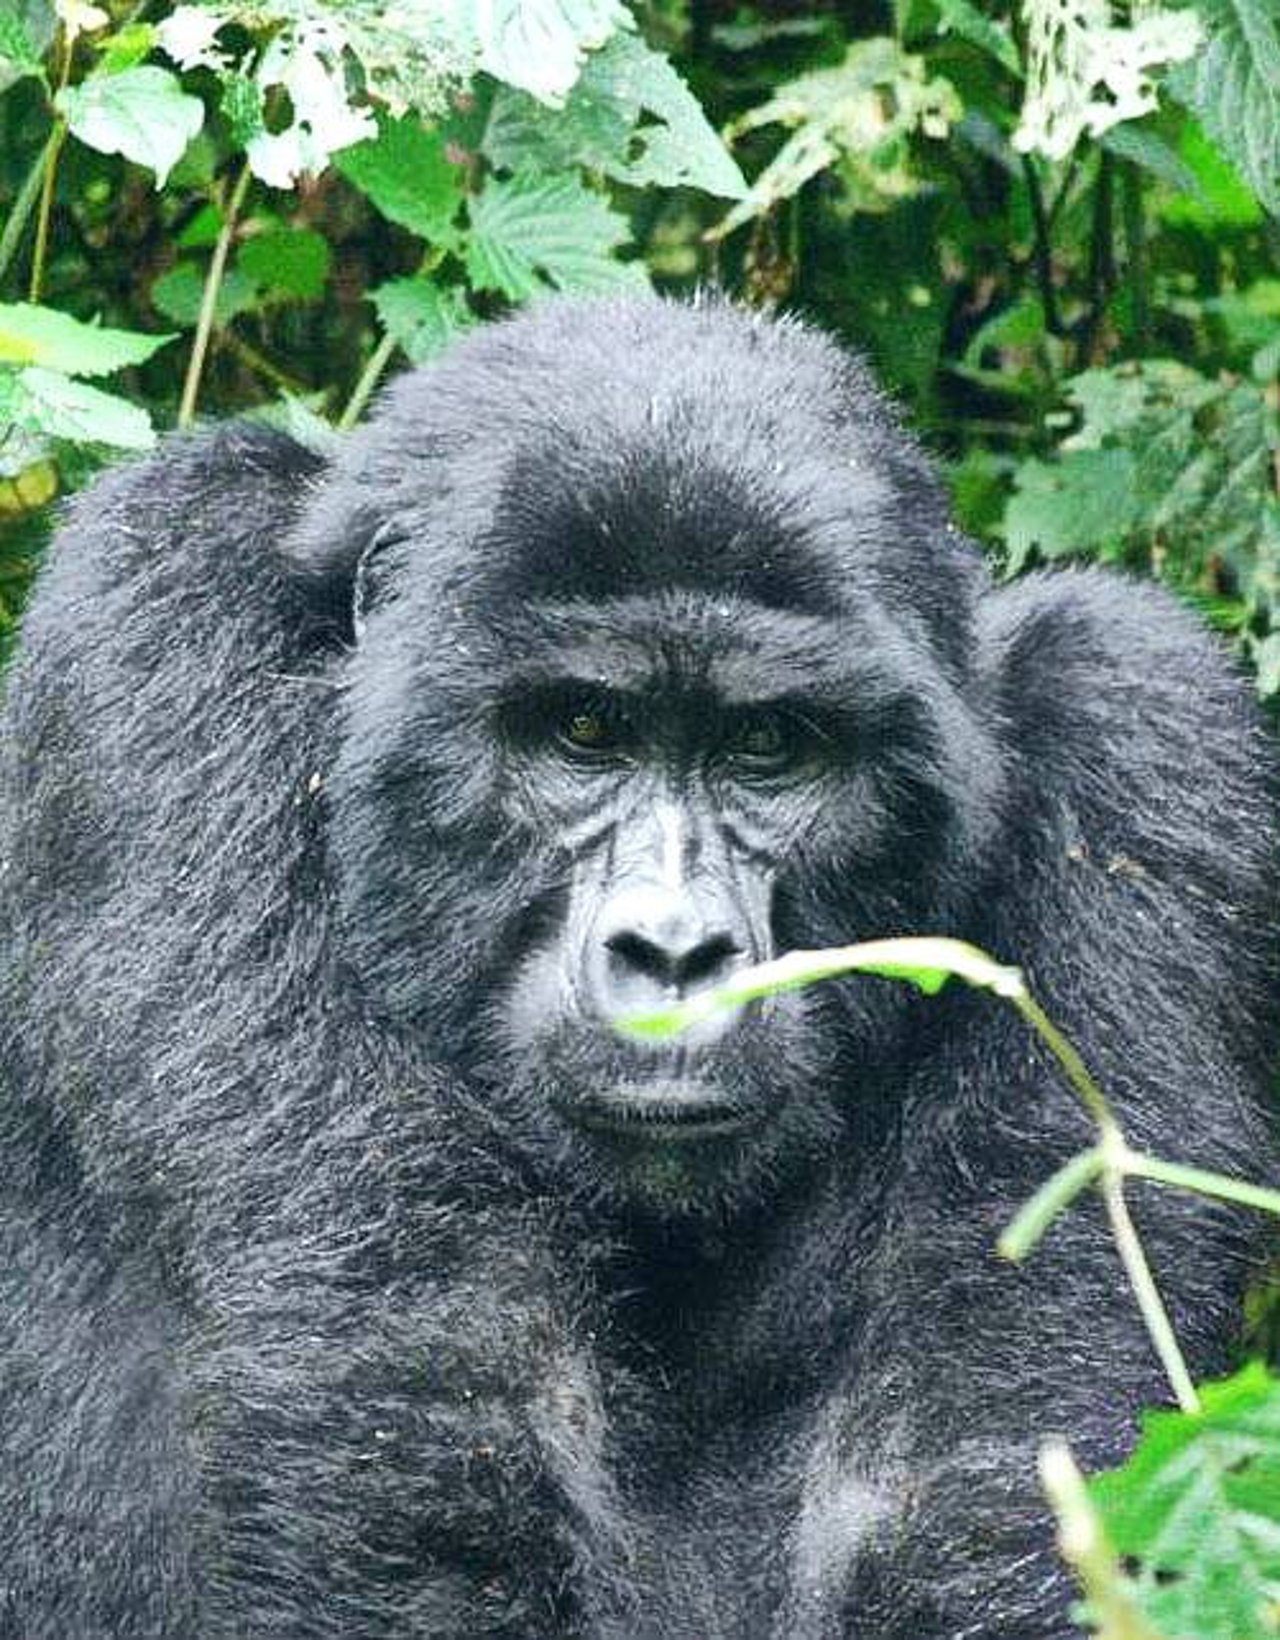 een_gorilla_die_ze_tegen_kwam_tijdens_een_trekking_in_oeganda